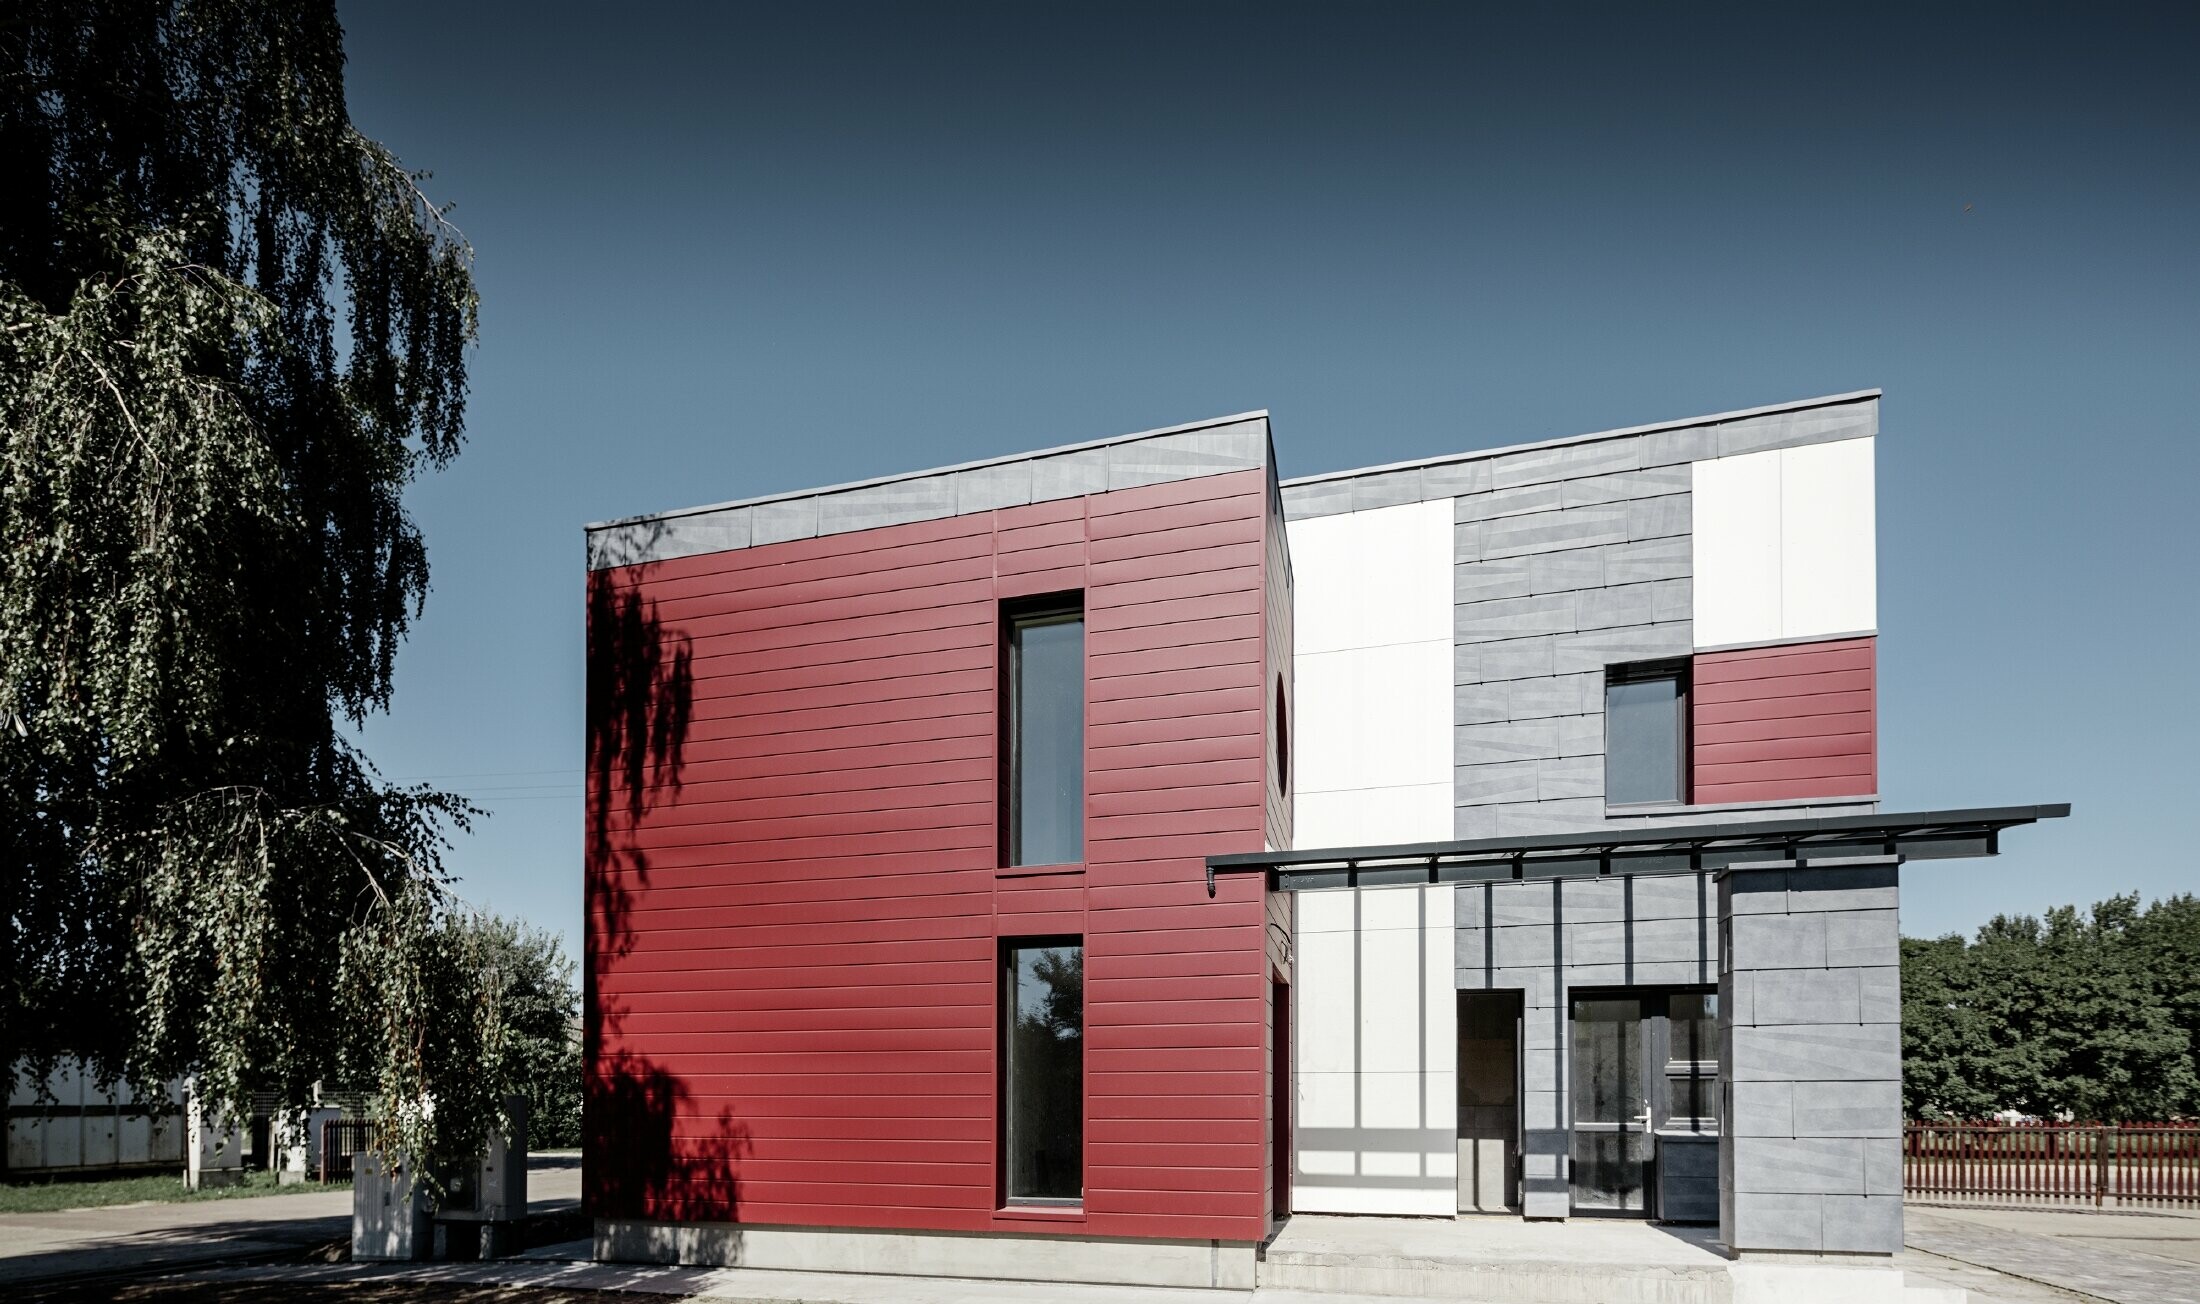 Complexe de bureaux moderne — Façade tricolore (blanc, rouge et gris pierre) réalisée à partir de produits en aluminium PREFA (sidings, panneaux de façade FX.12 et panneaux composites en aluminium)